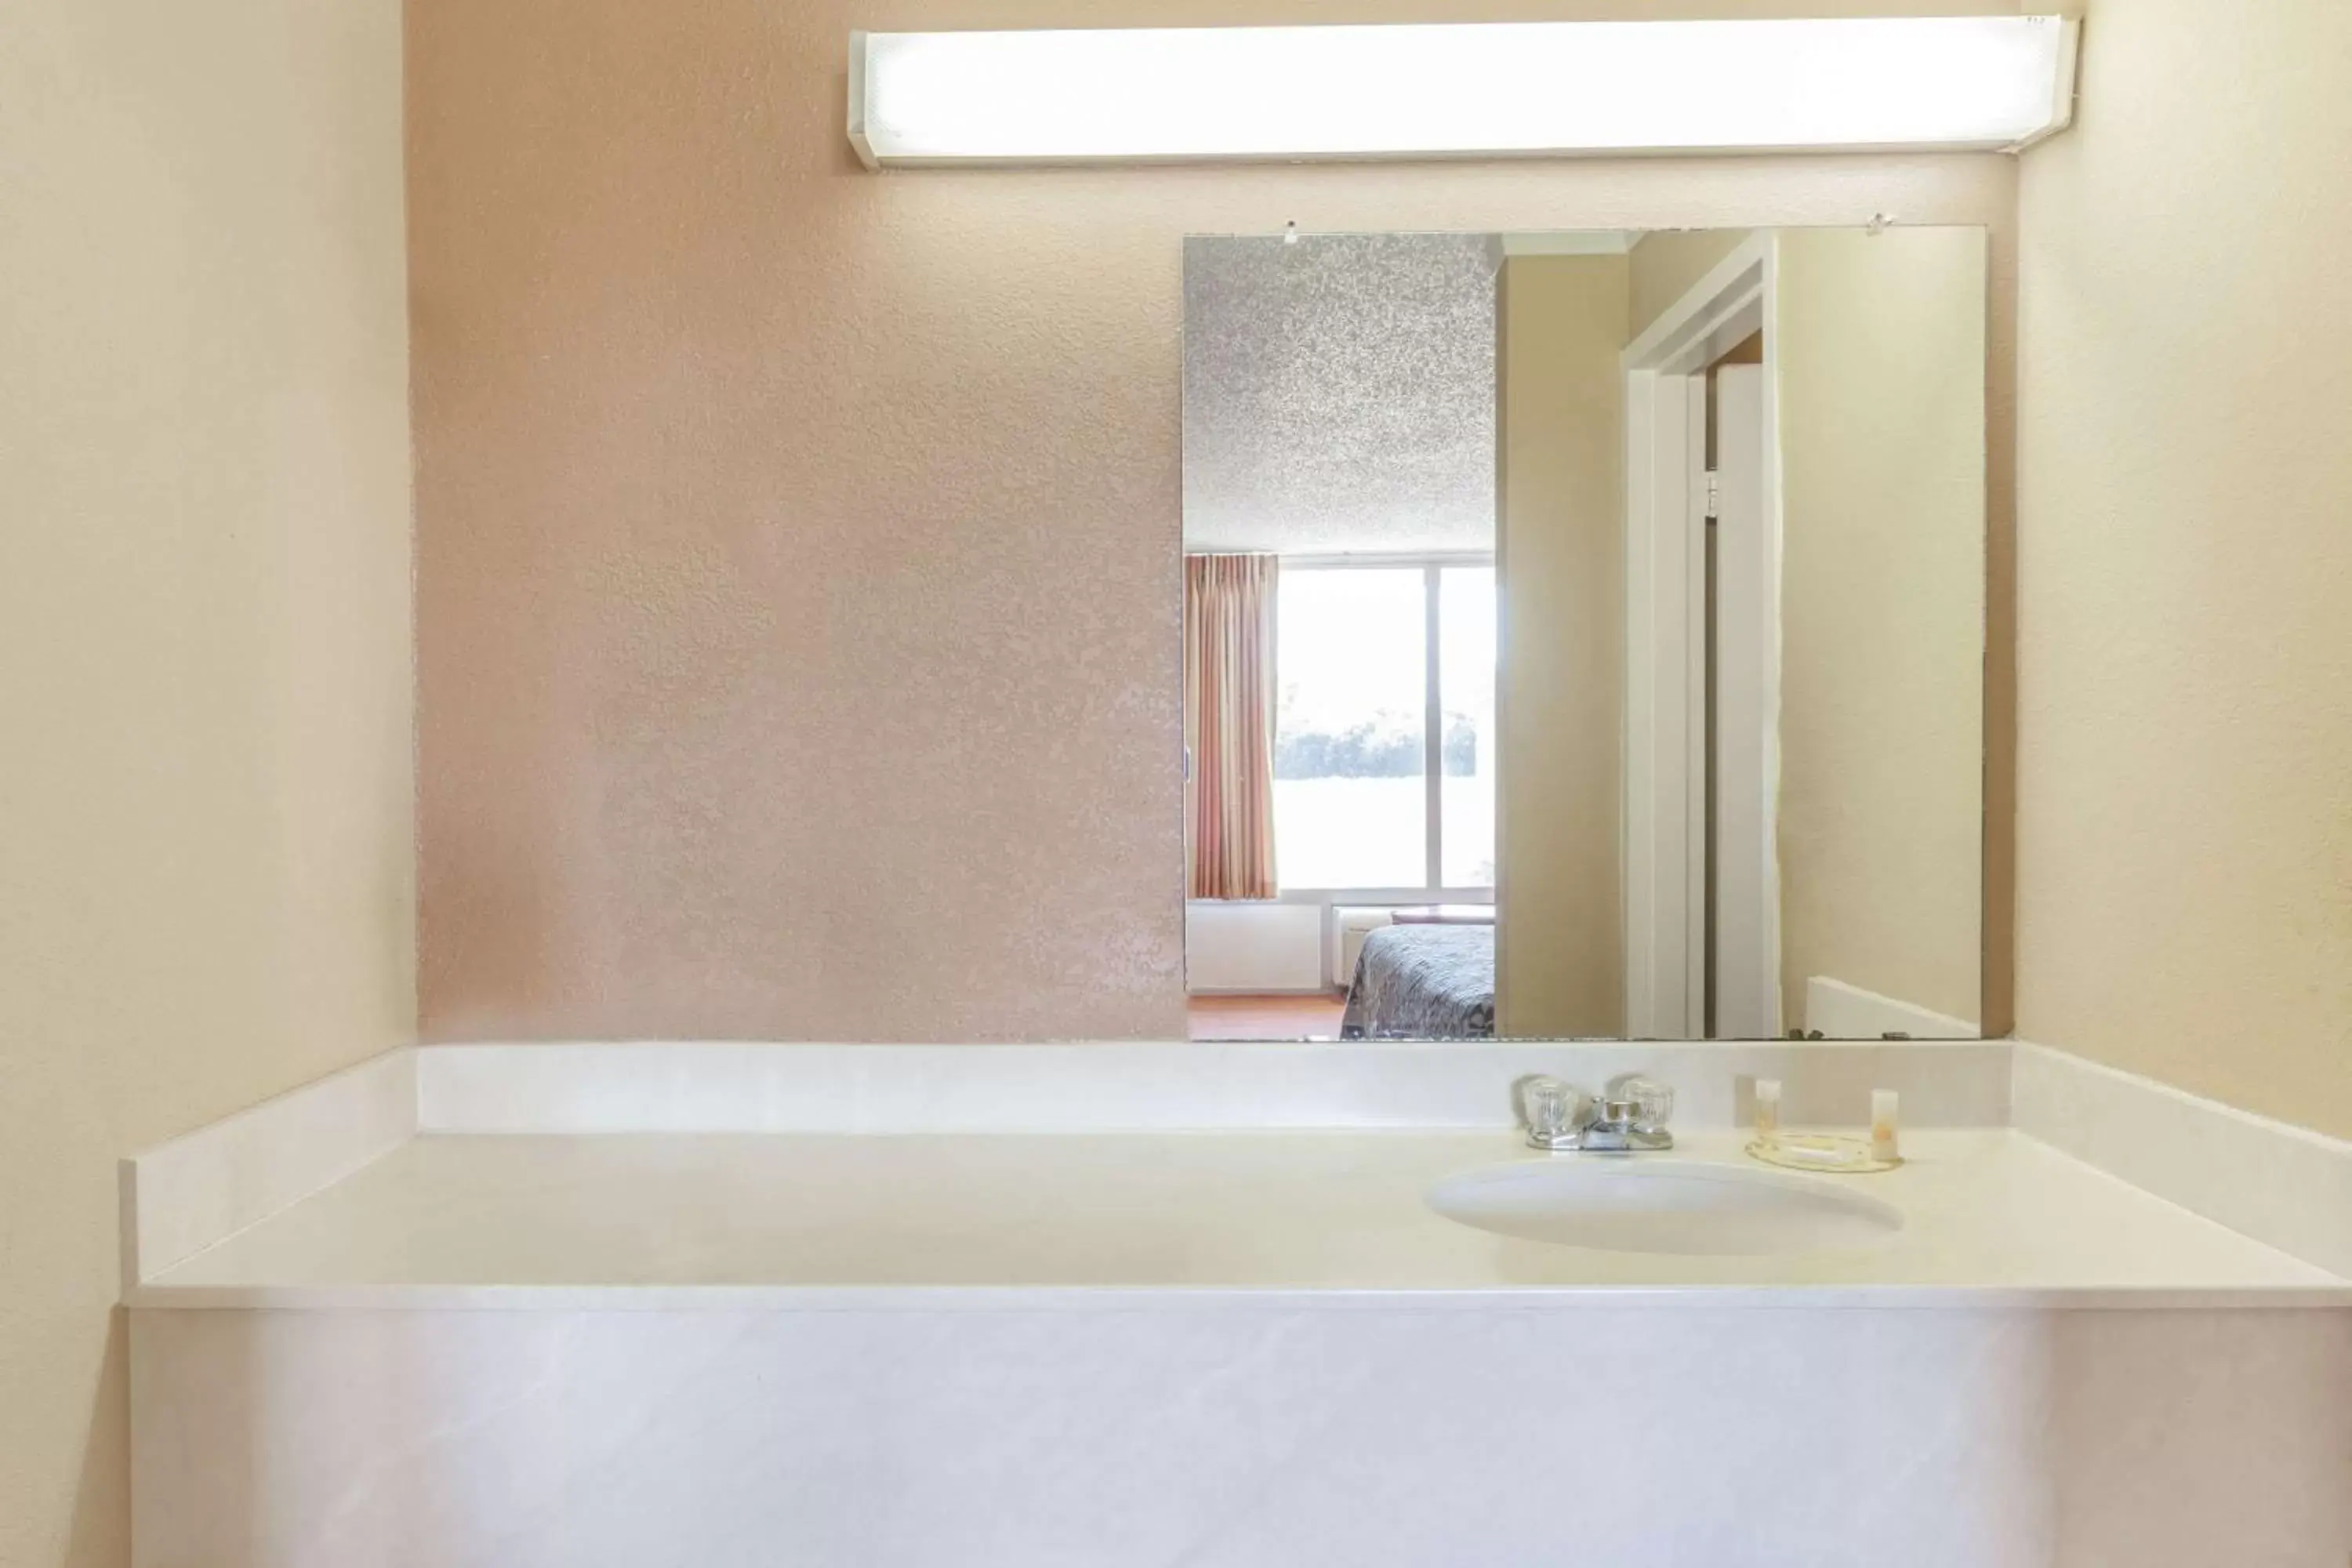 Photo of the whole room, Bathroom in Days Inn by Wyndham Hillsboro TX